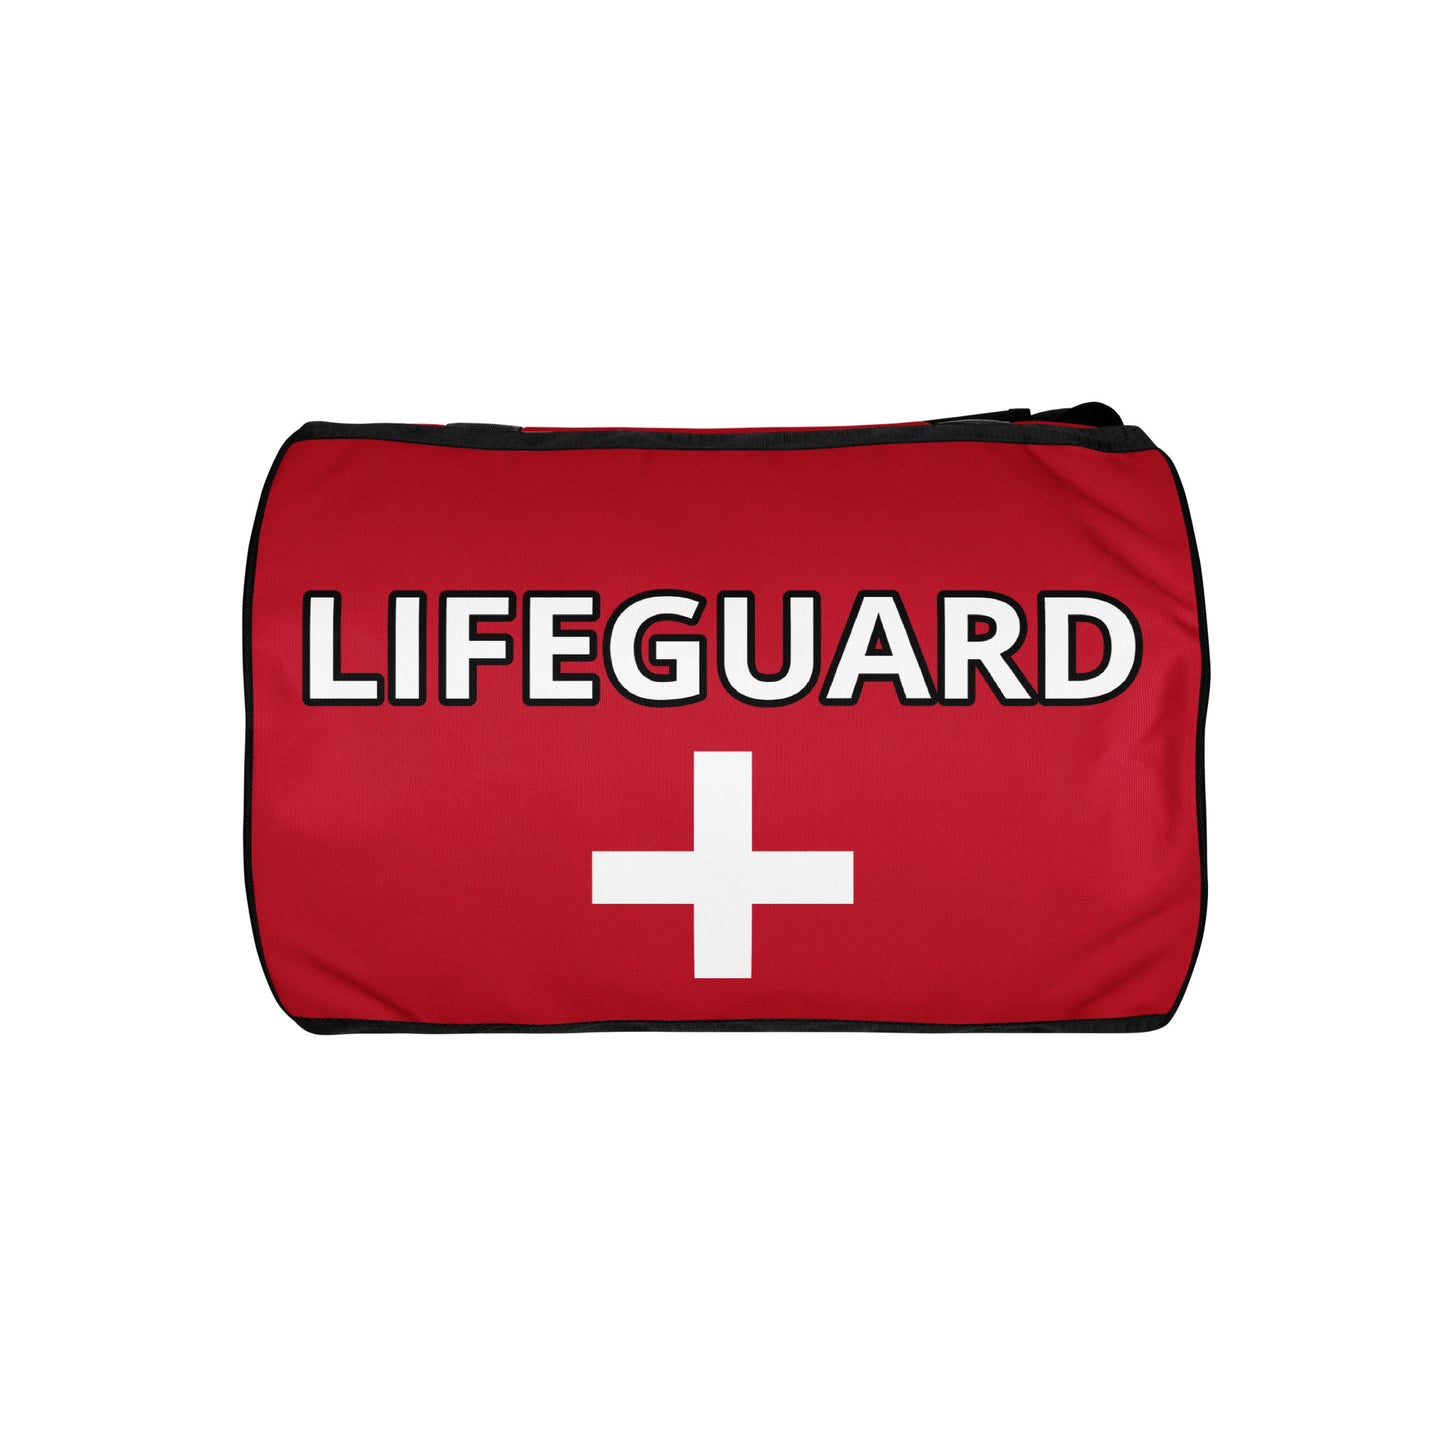 Beach Lifeguard 954 Signature Day/Gym Bag